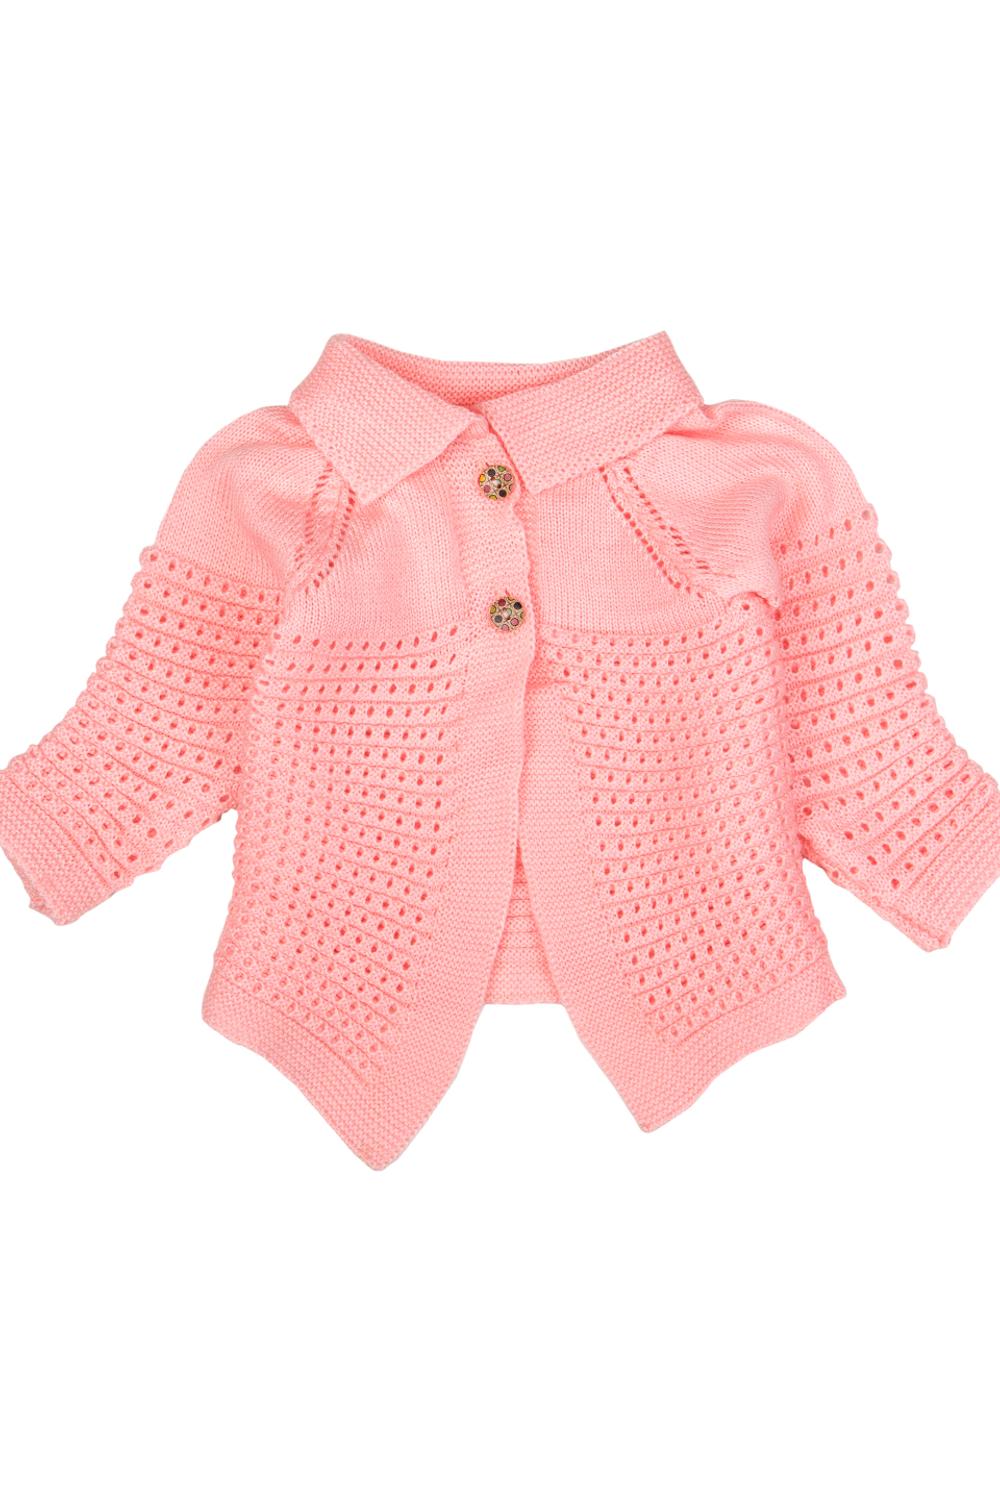 Mee Mee Unisex Full sleeve Sweater Set- Pink